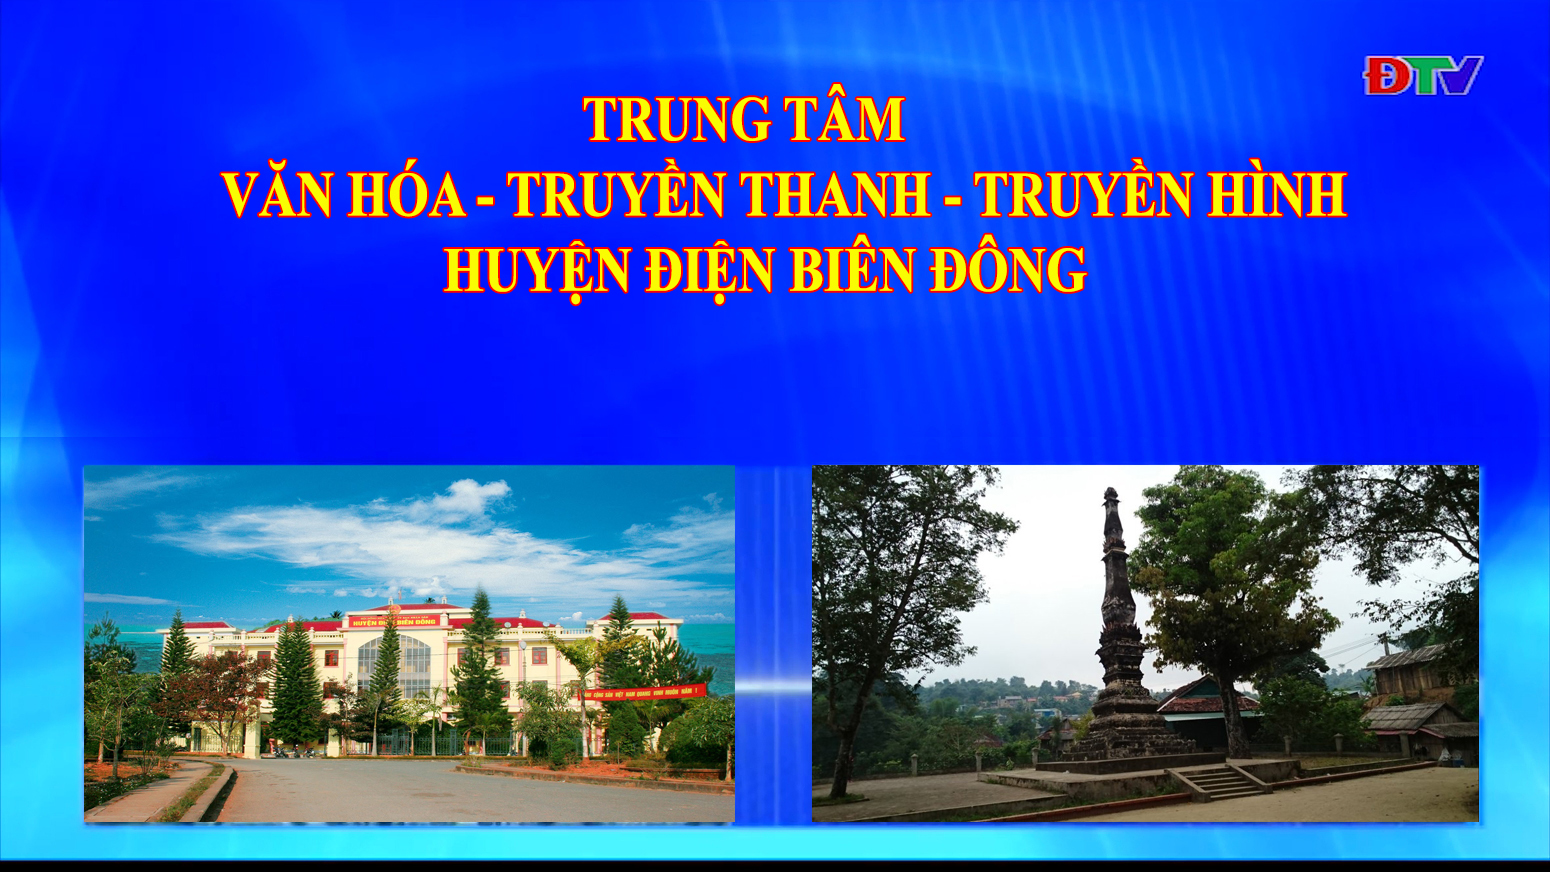 Trung tâm VH-TTTH huyện Điện Biên Đông (Ngày 31-10-2020)